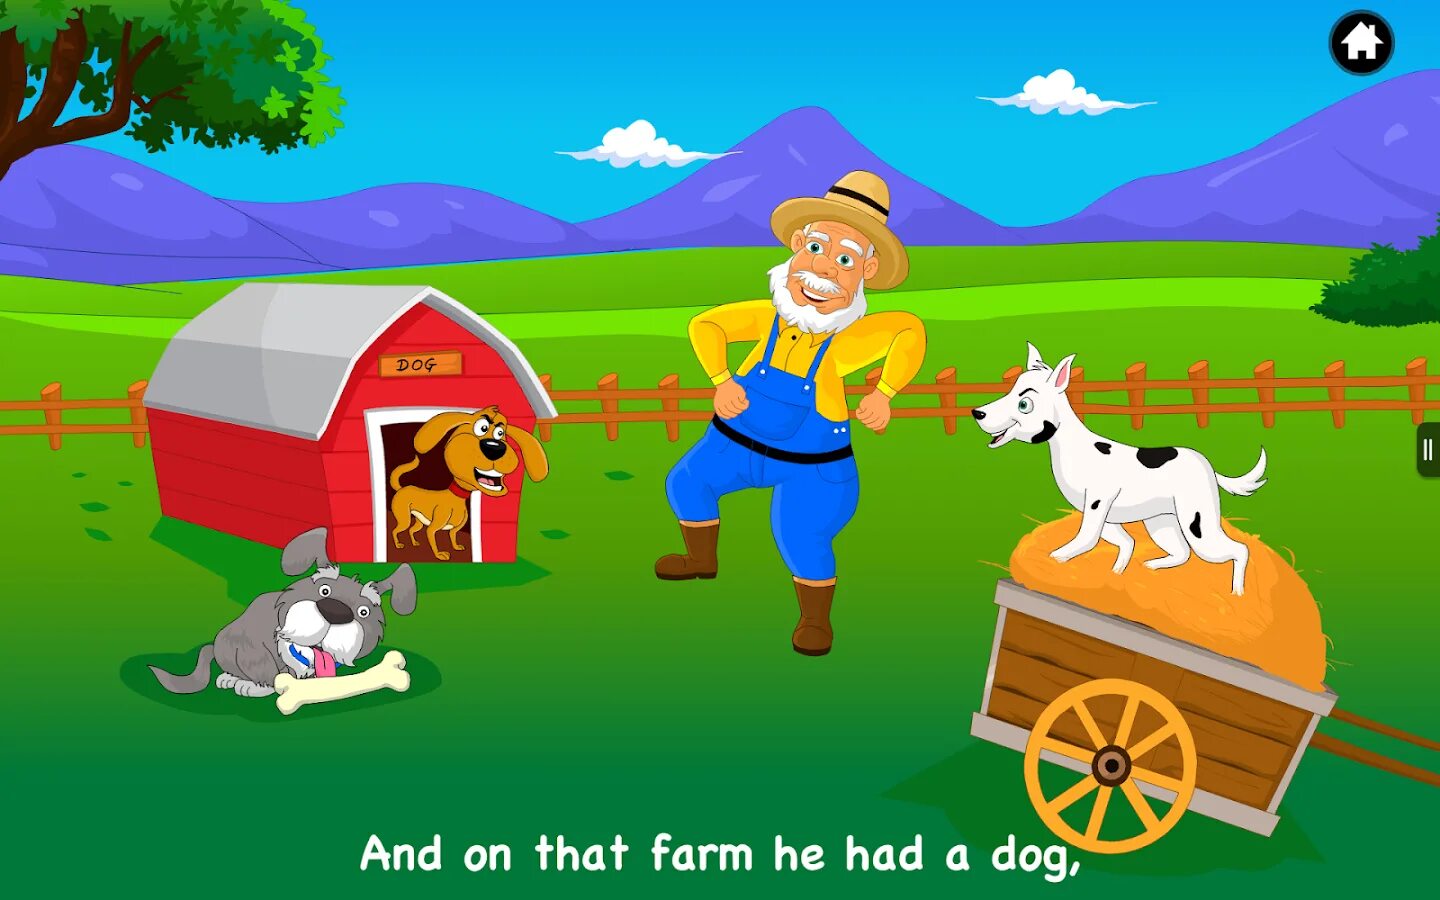 Включи old macdonald. Ферма старого Макдональда. Old MCDONALD had a Farm. Old MACDONALD had a Farm Song. Old MACDONALD'S Farm app.